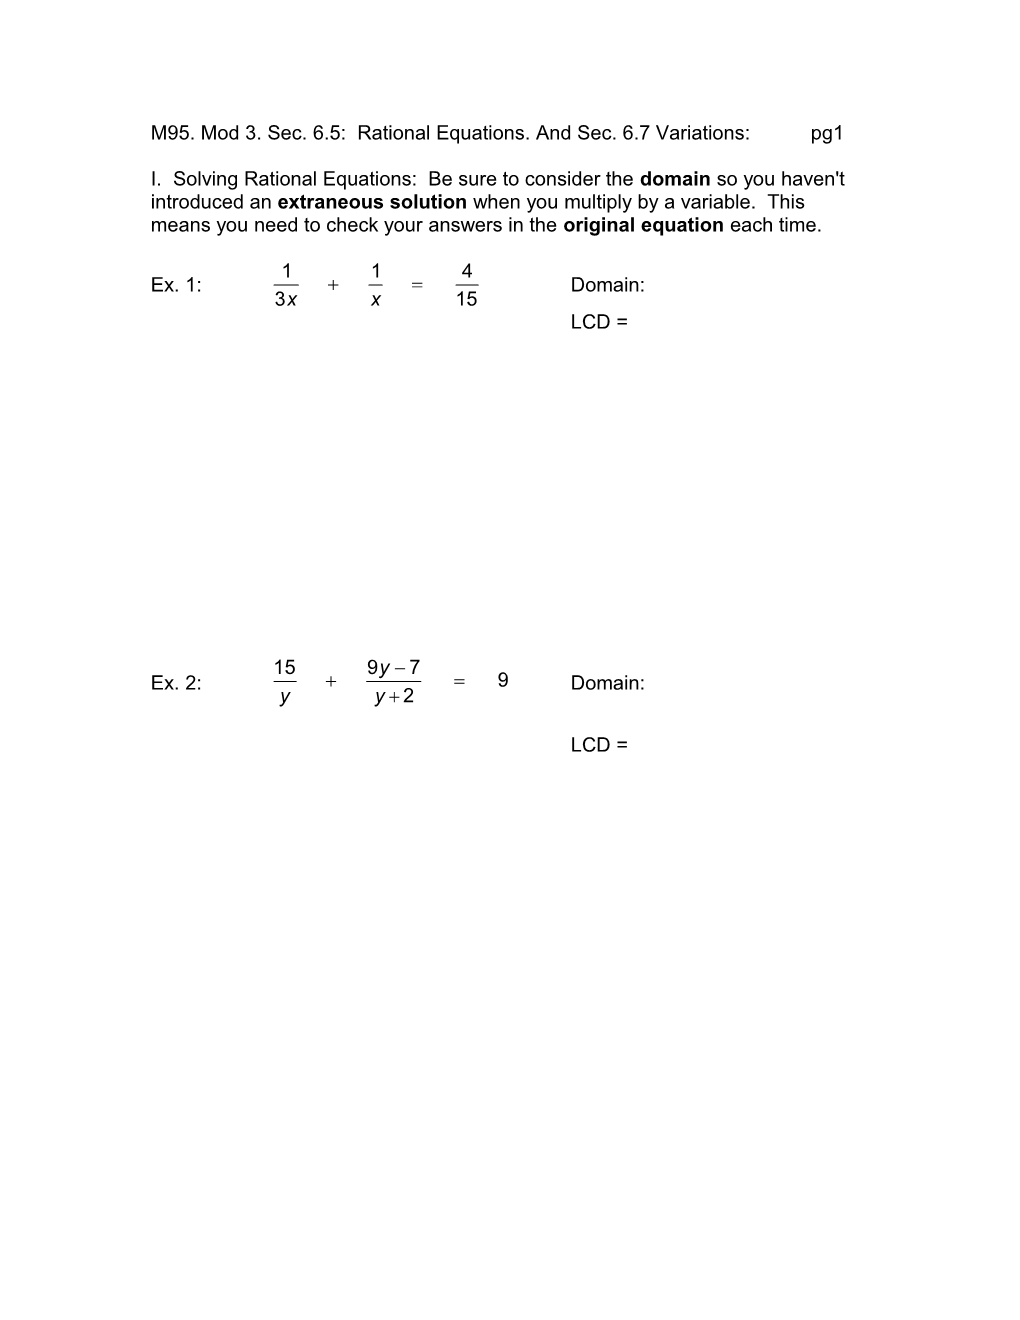 M95. Mod 3. Sec. 6.5: Rational Equations. and Sec. 6.7 Variations:Pg1